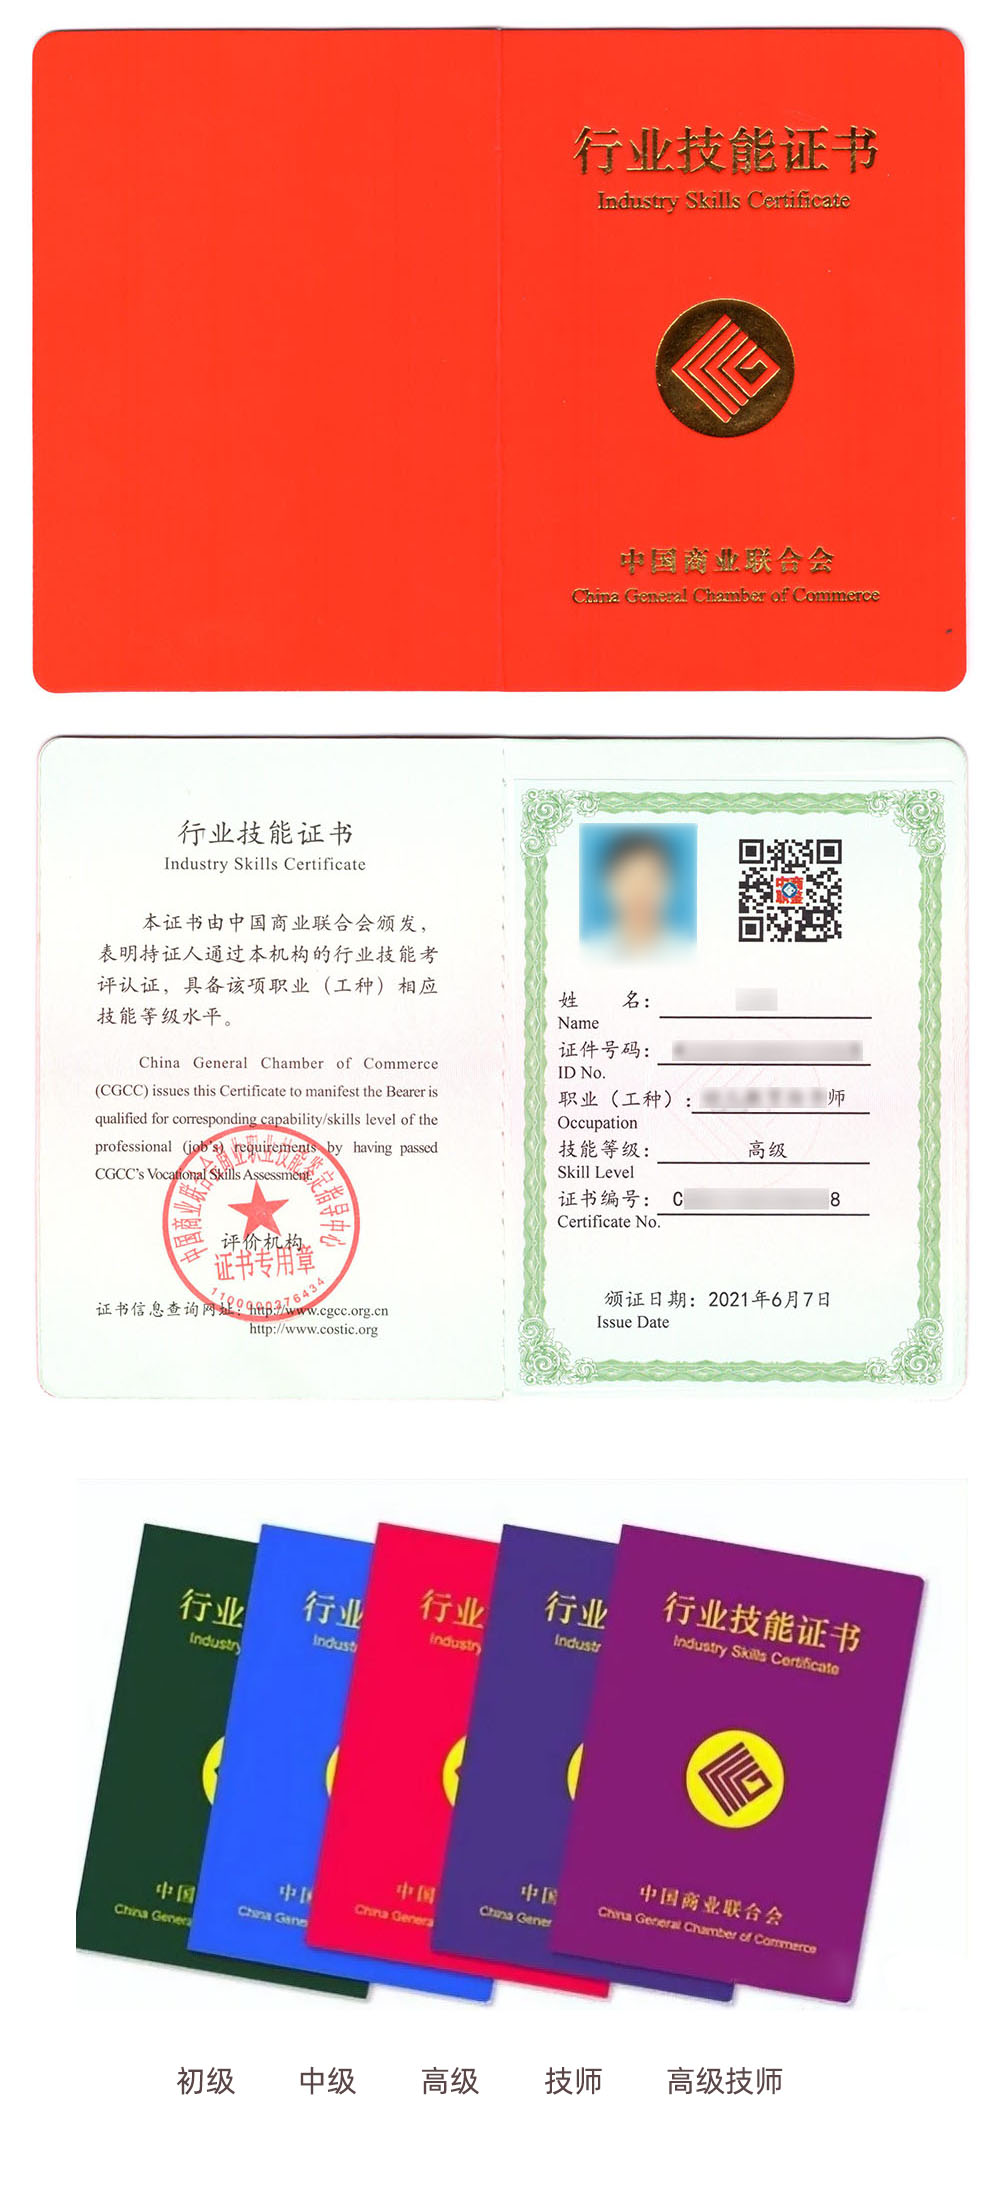 中国商业联合会商业职业技能鉴定中心 行业技能证书 商务单证证证书样本